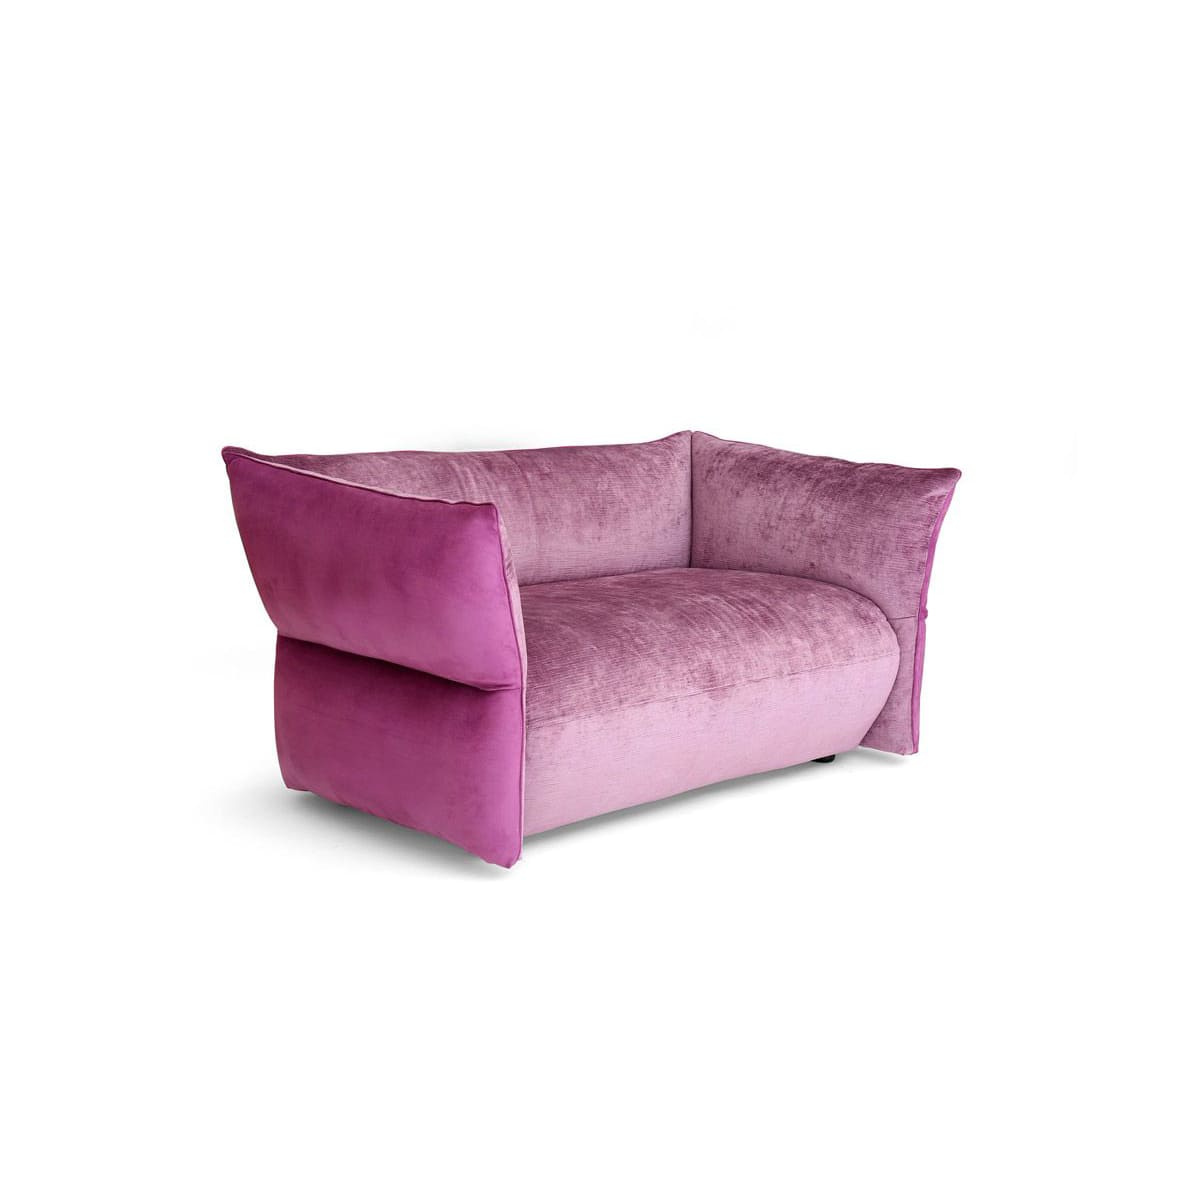 Canapé d'accueil FOYER dispose d'une assise recouverte d'un tissu rose GIOVANNETTI